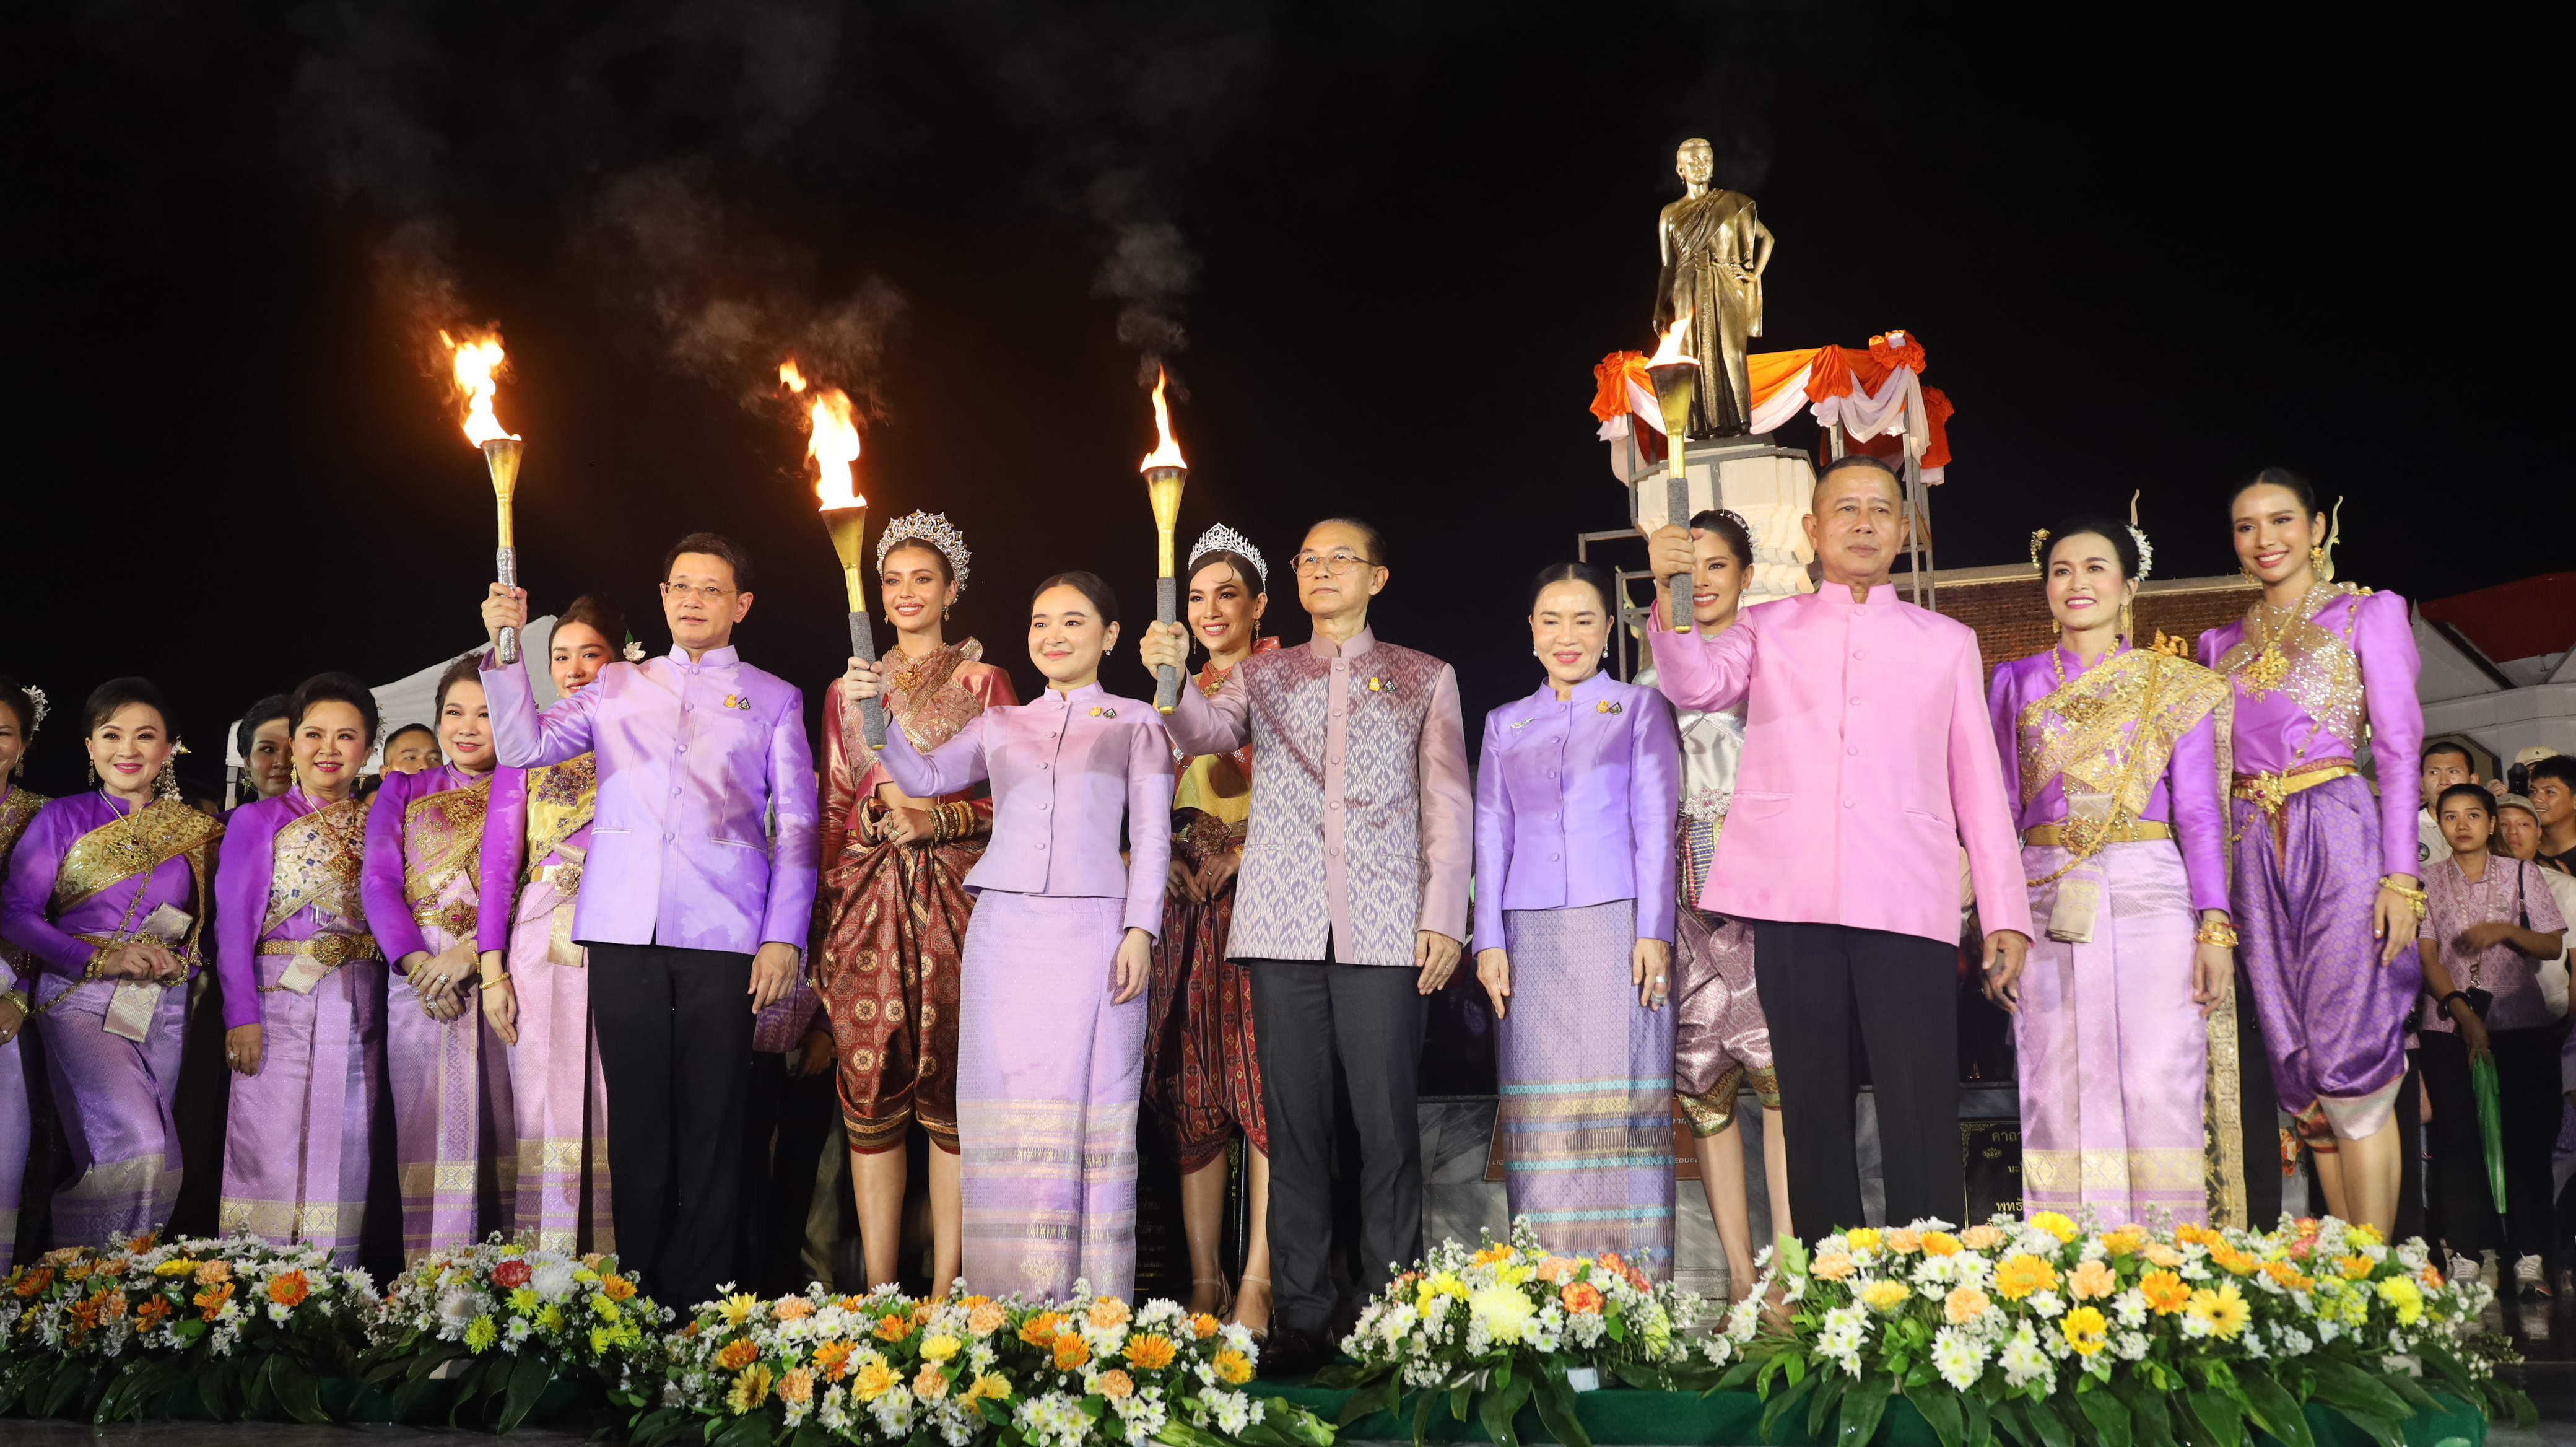 โคราช-Soft Power รมว.ท่องเที่ยว ปลื้มเปิดงานย่าโมยิ่งใหญ่ ชวนเที่ยวชมงานฉลองวันแห่งชัยชนะท้าวสุรนารี สีสันสาวงามแอนโทเนีย โพซิ้ว ถือคบเพลิงจุดพลุ 4 มุมเมือง  สตรีโคราช  ในชุดไทยจักรีสีม่วงทองรำบวงสวงสักการะ 7,100 คน  